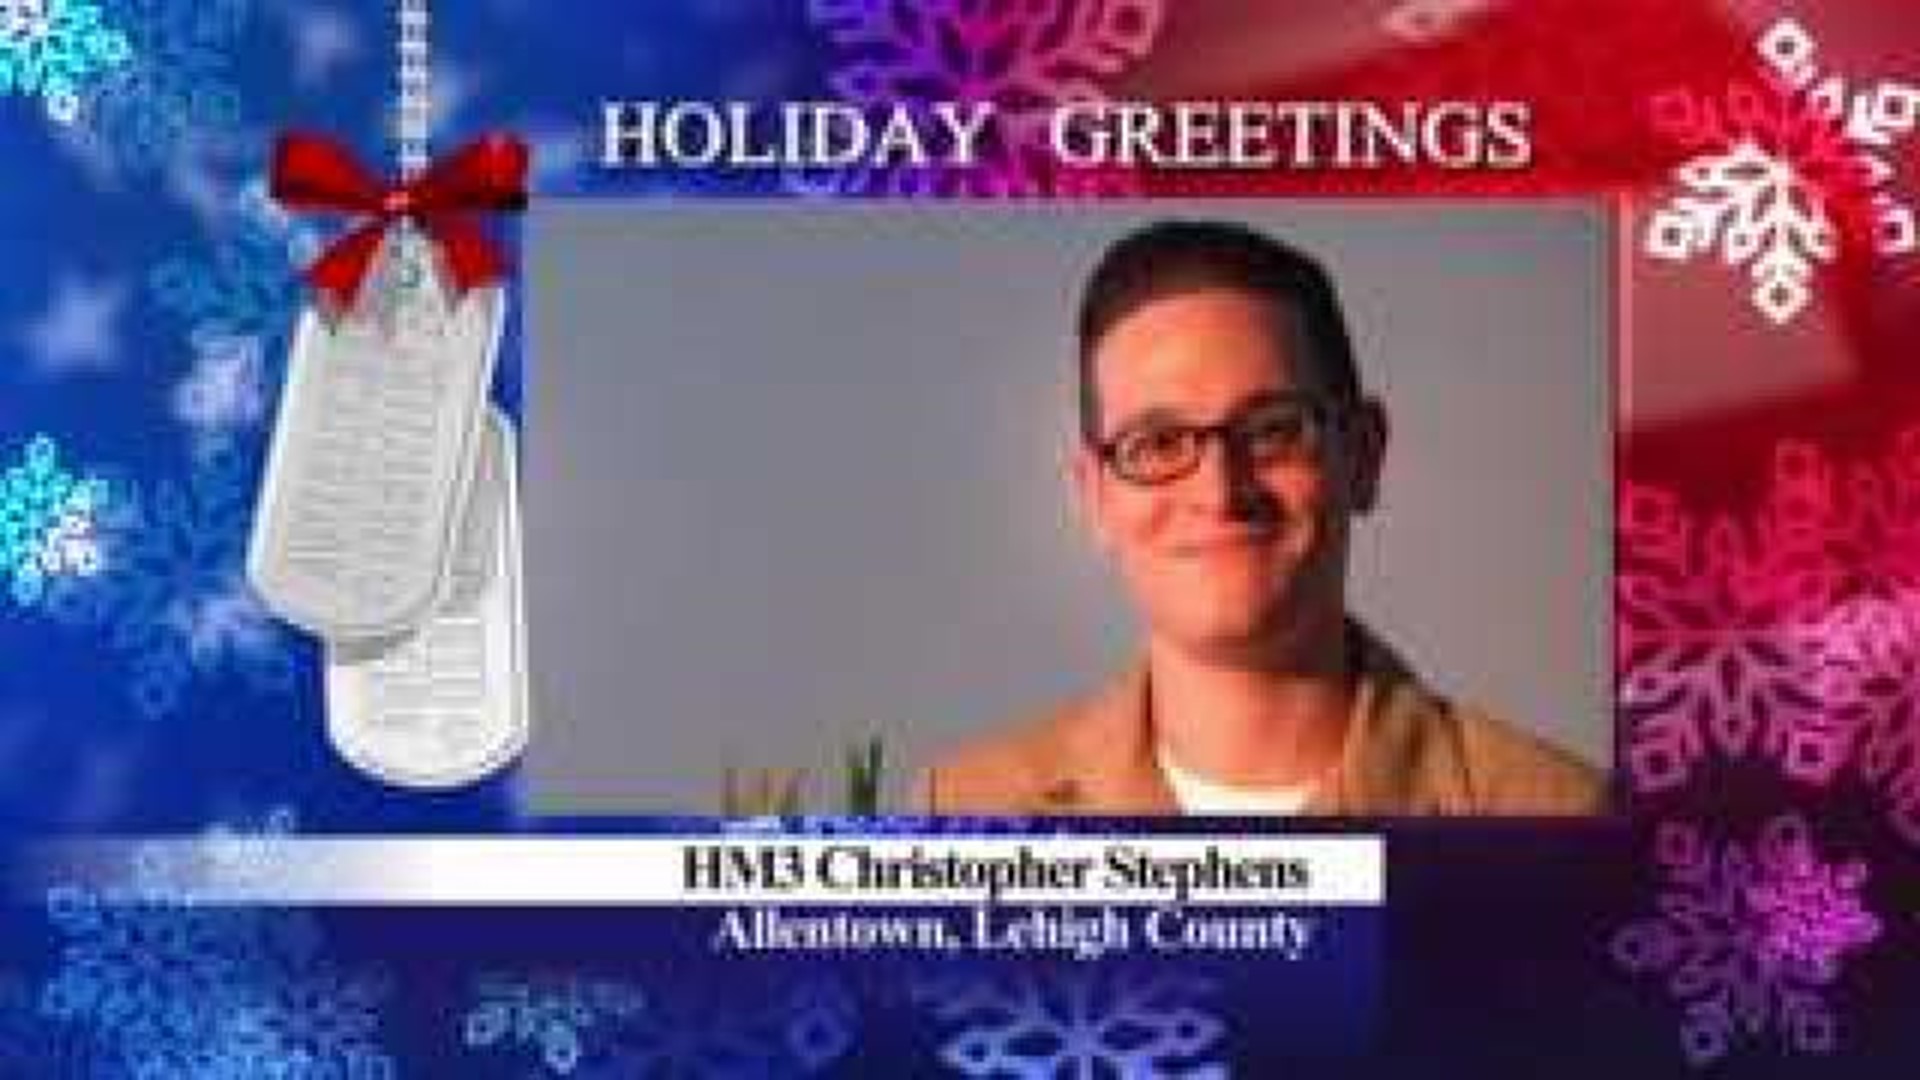 Military Greeting: HM3 Christopher Stevens